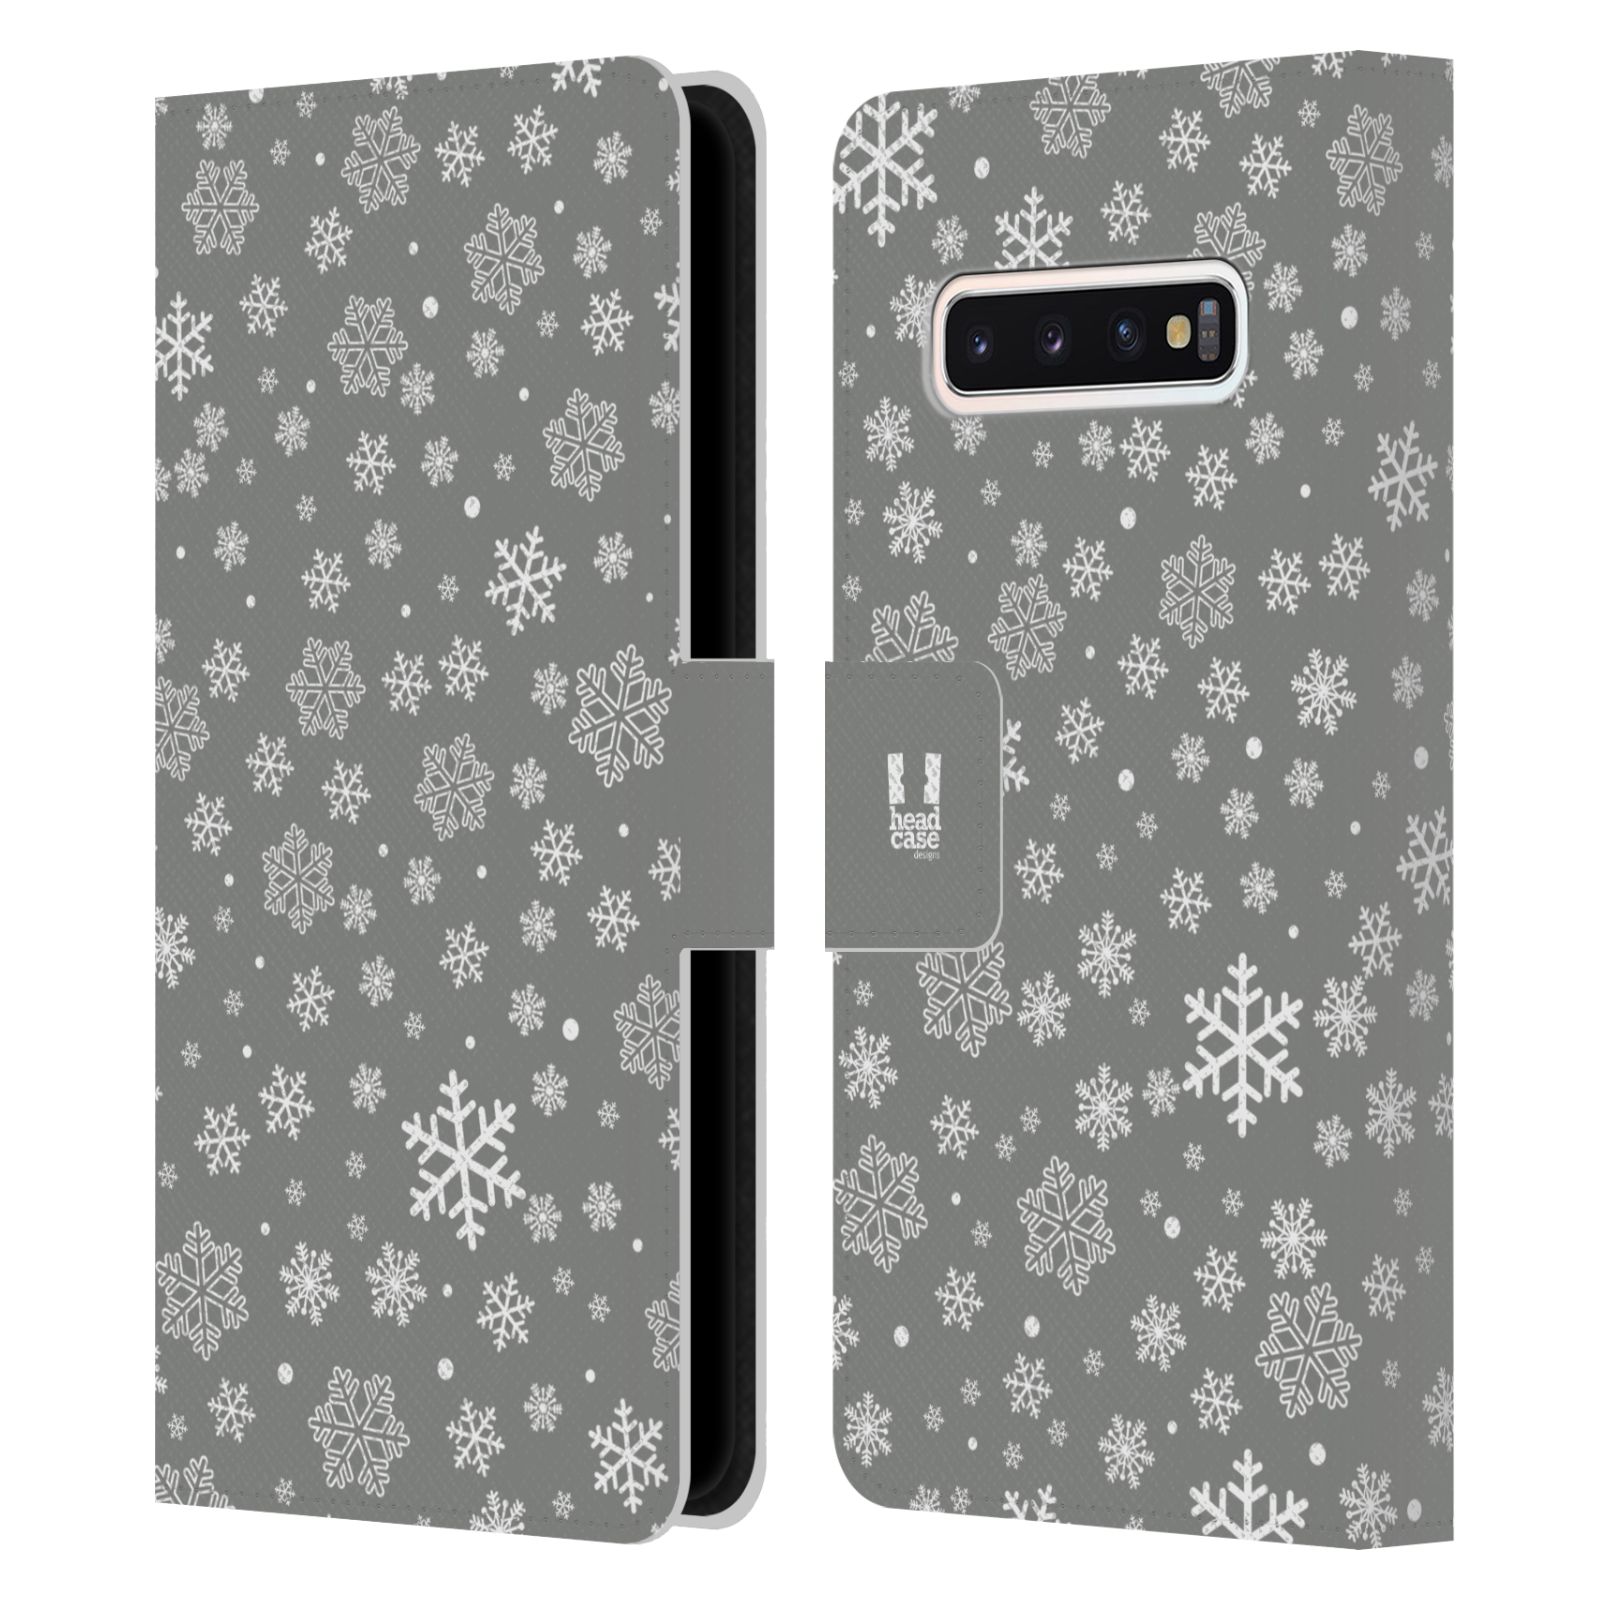 Pouzdro HEAD CASE na mobil Samsung Galaxy S10 stříbrné vzory sněžná vločka